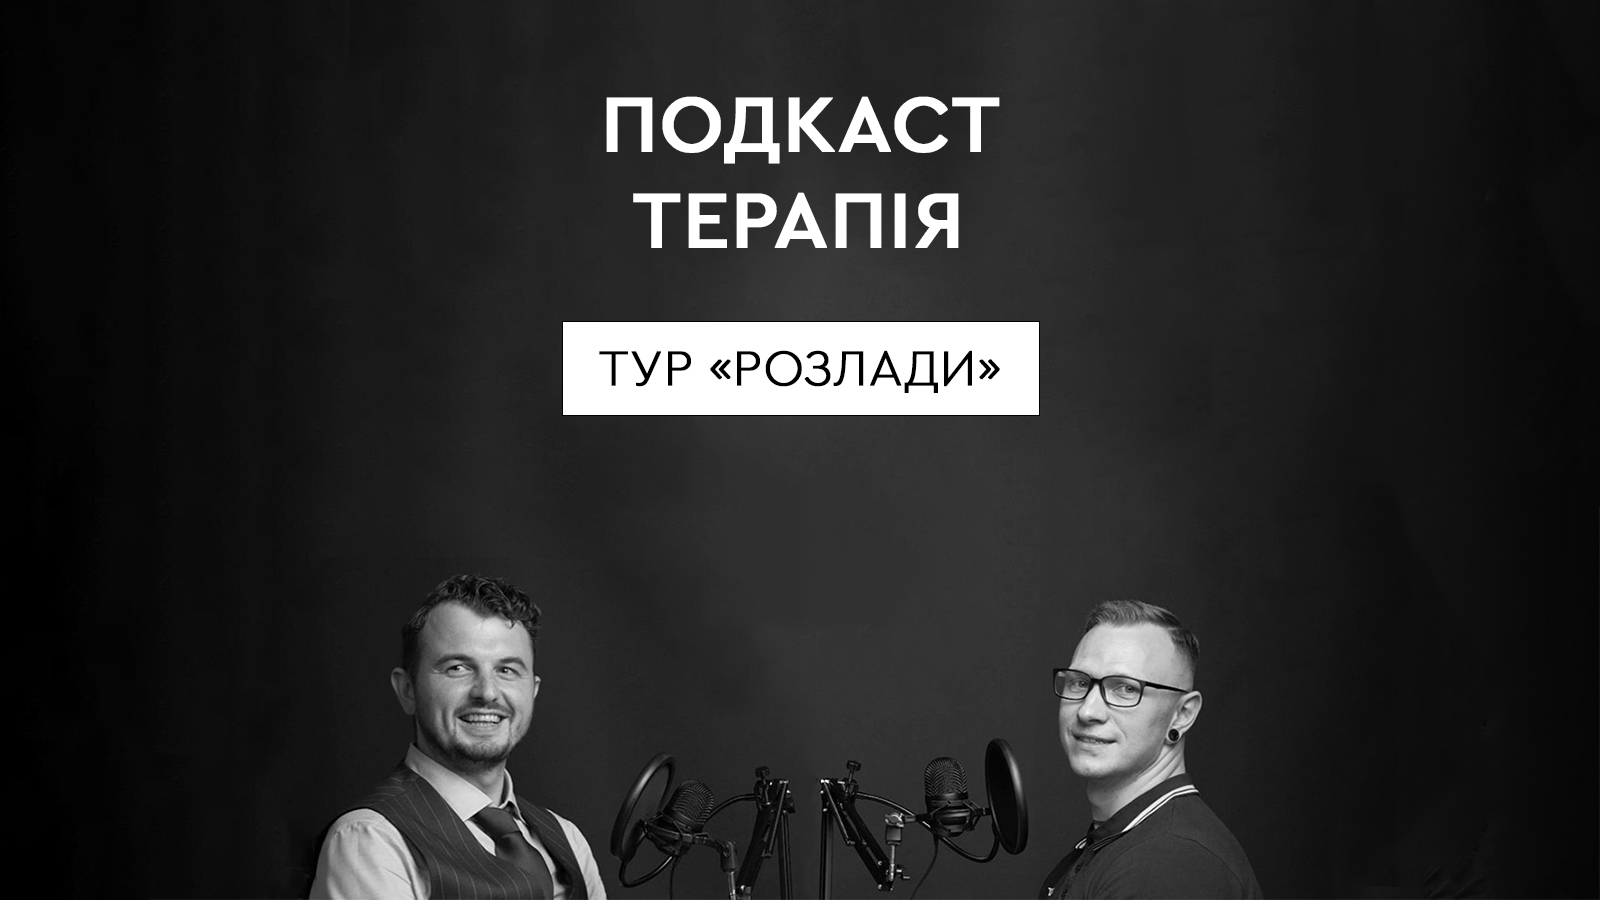 Podcast Terapia u Lvovi